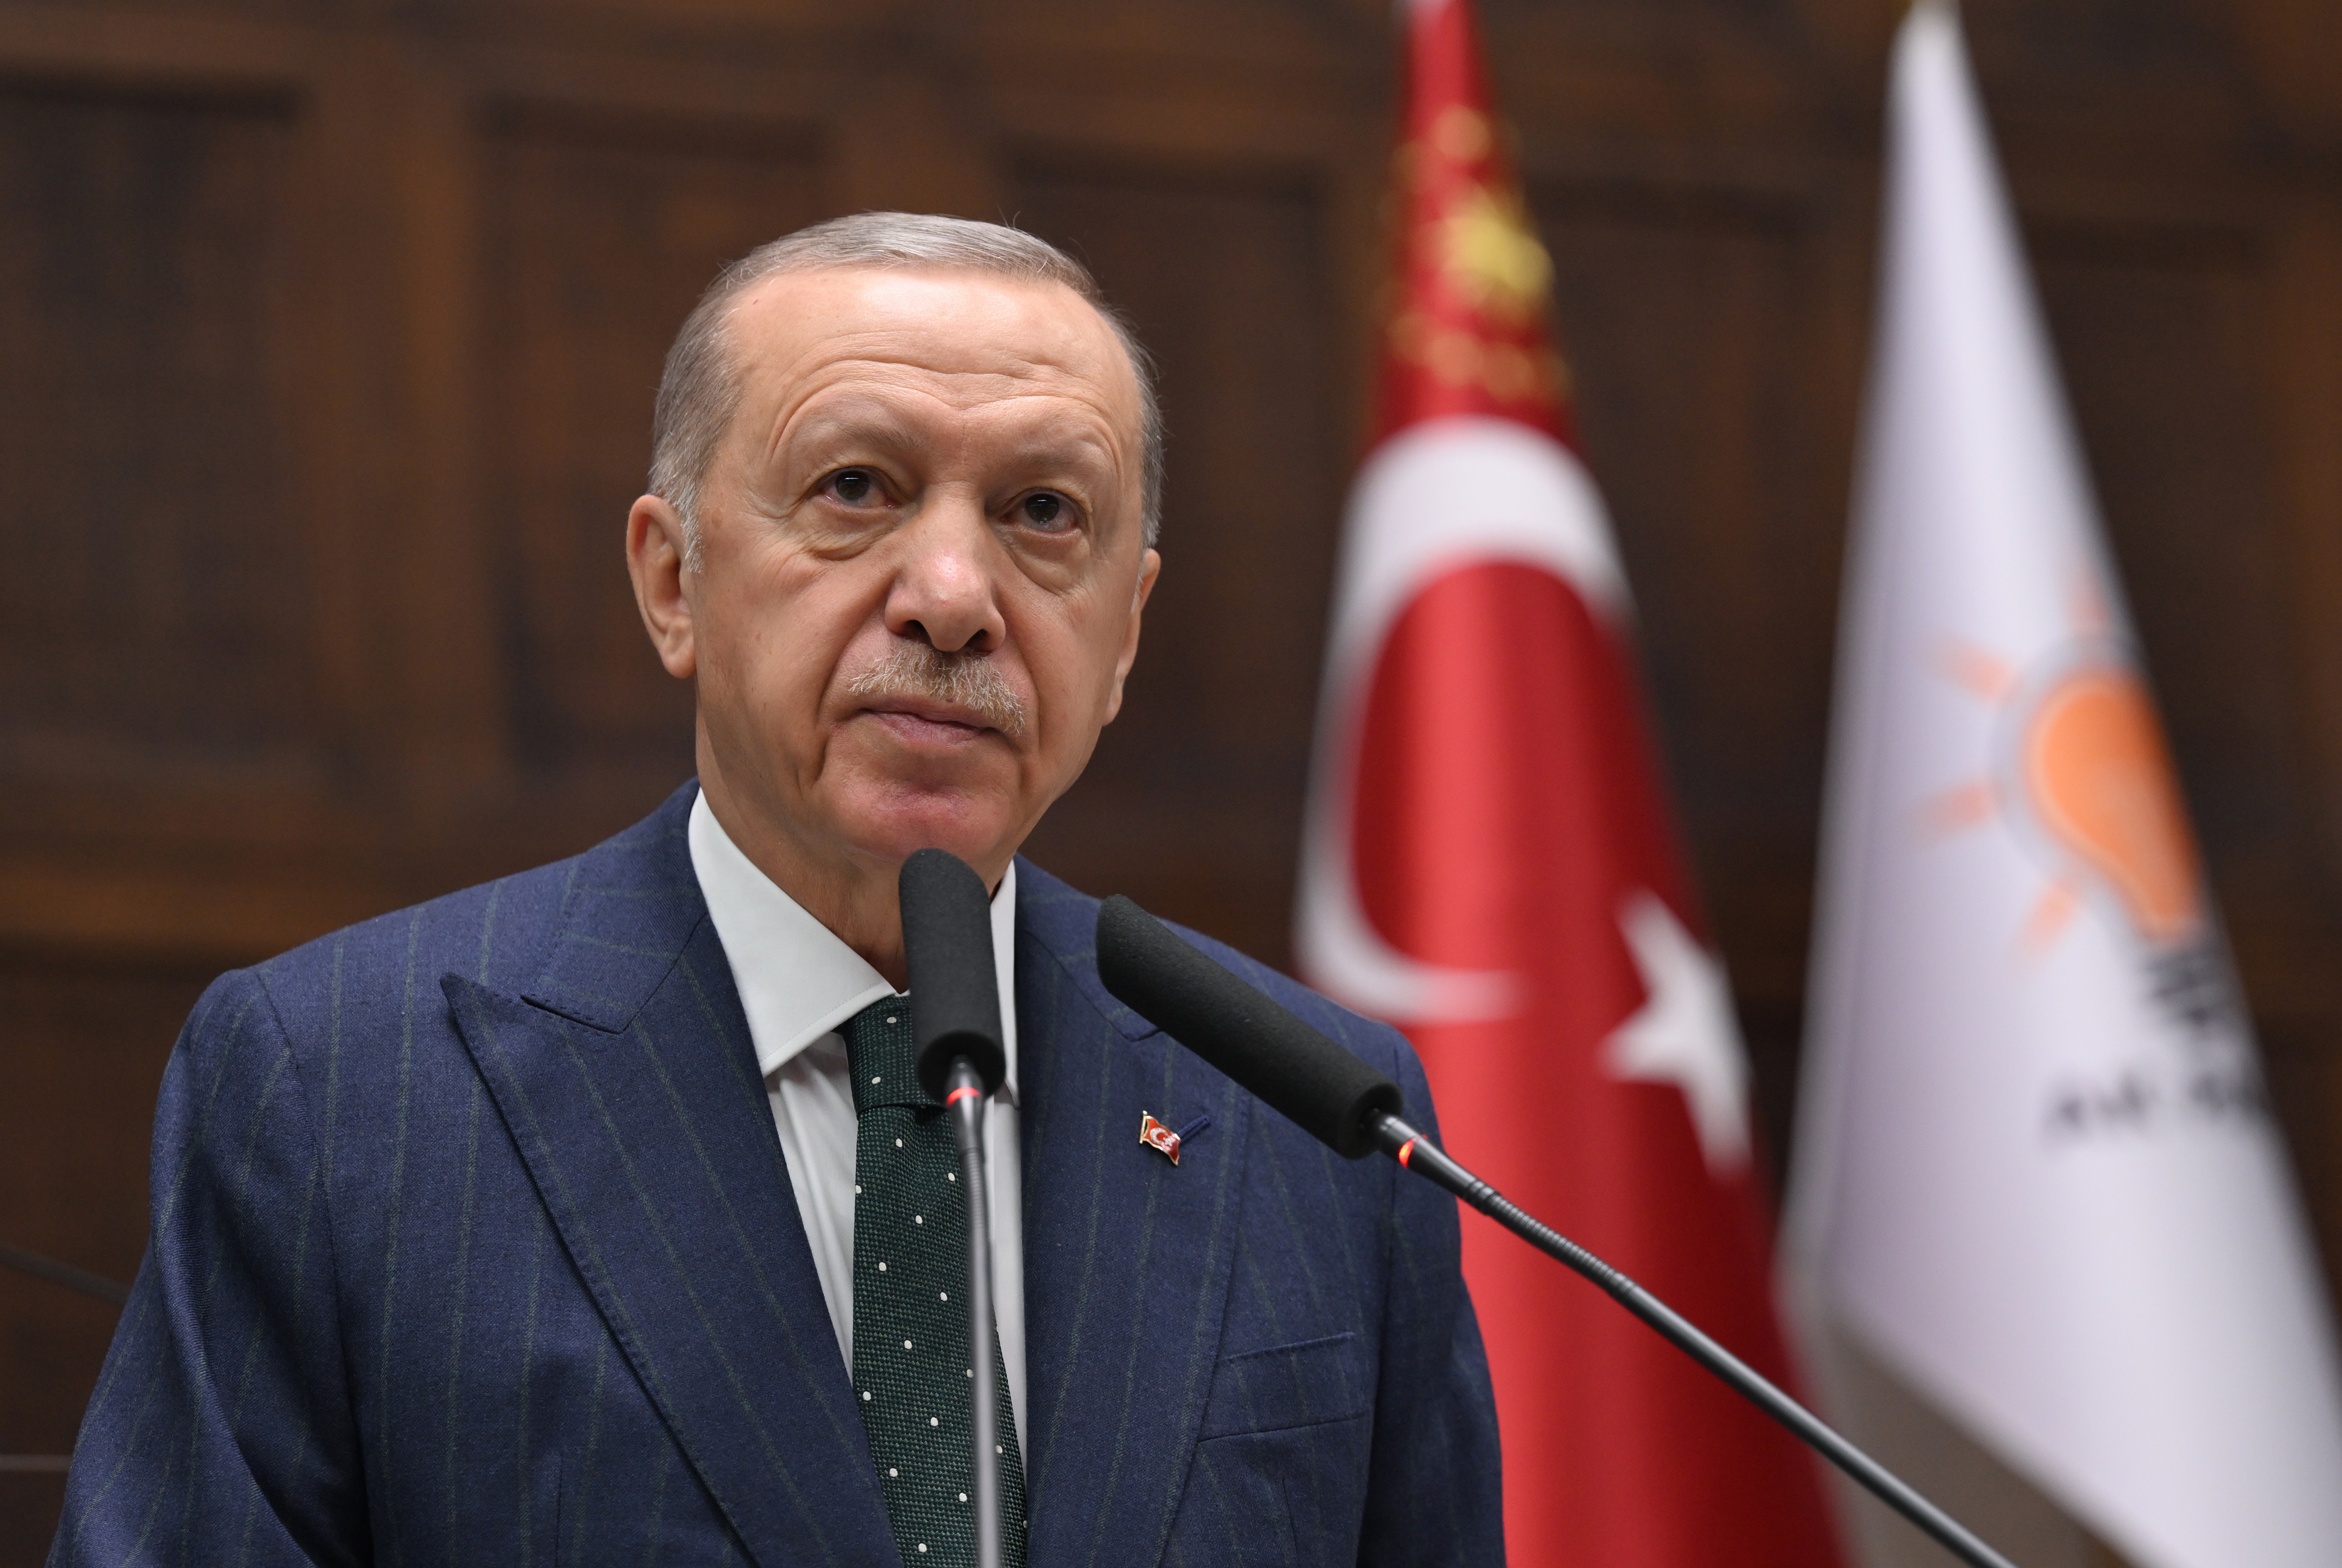 Cumhurbaşkanı Erdoğan'dan ABD'ye sert sözler: "Bu kan senin elinde"